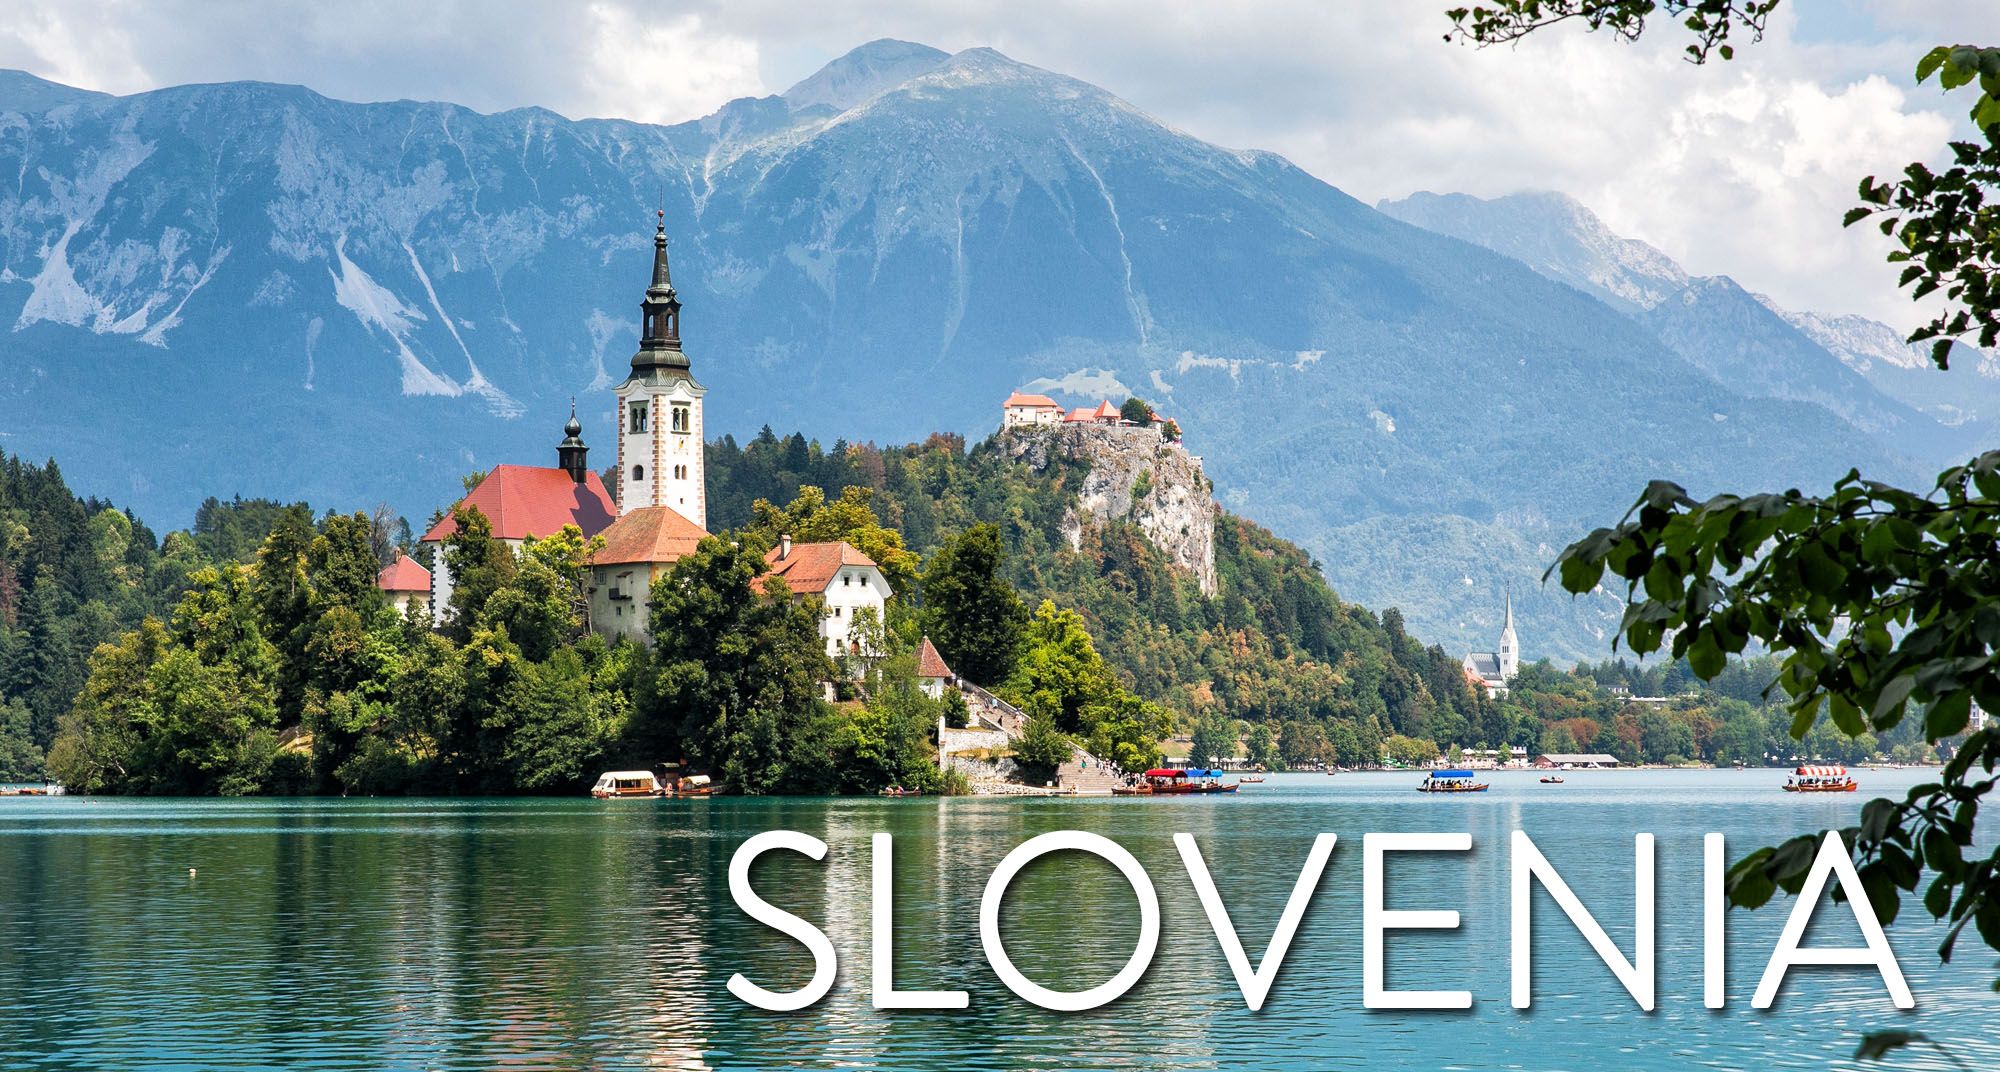 Slovenia Travel Guide - Earth Trekkers